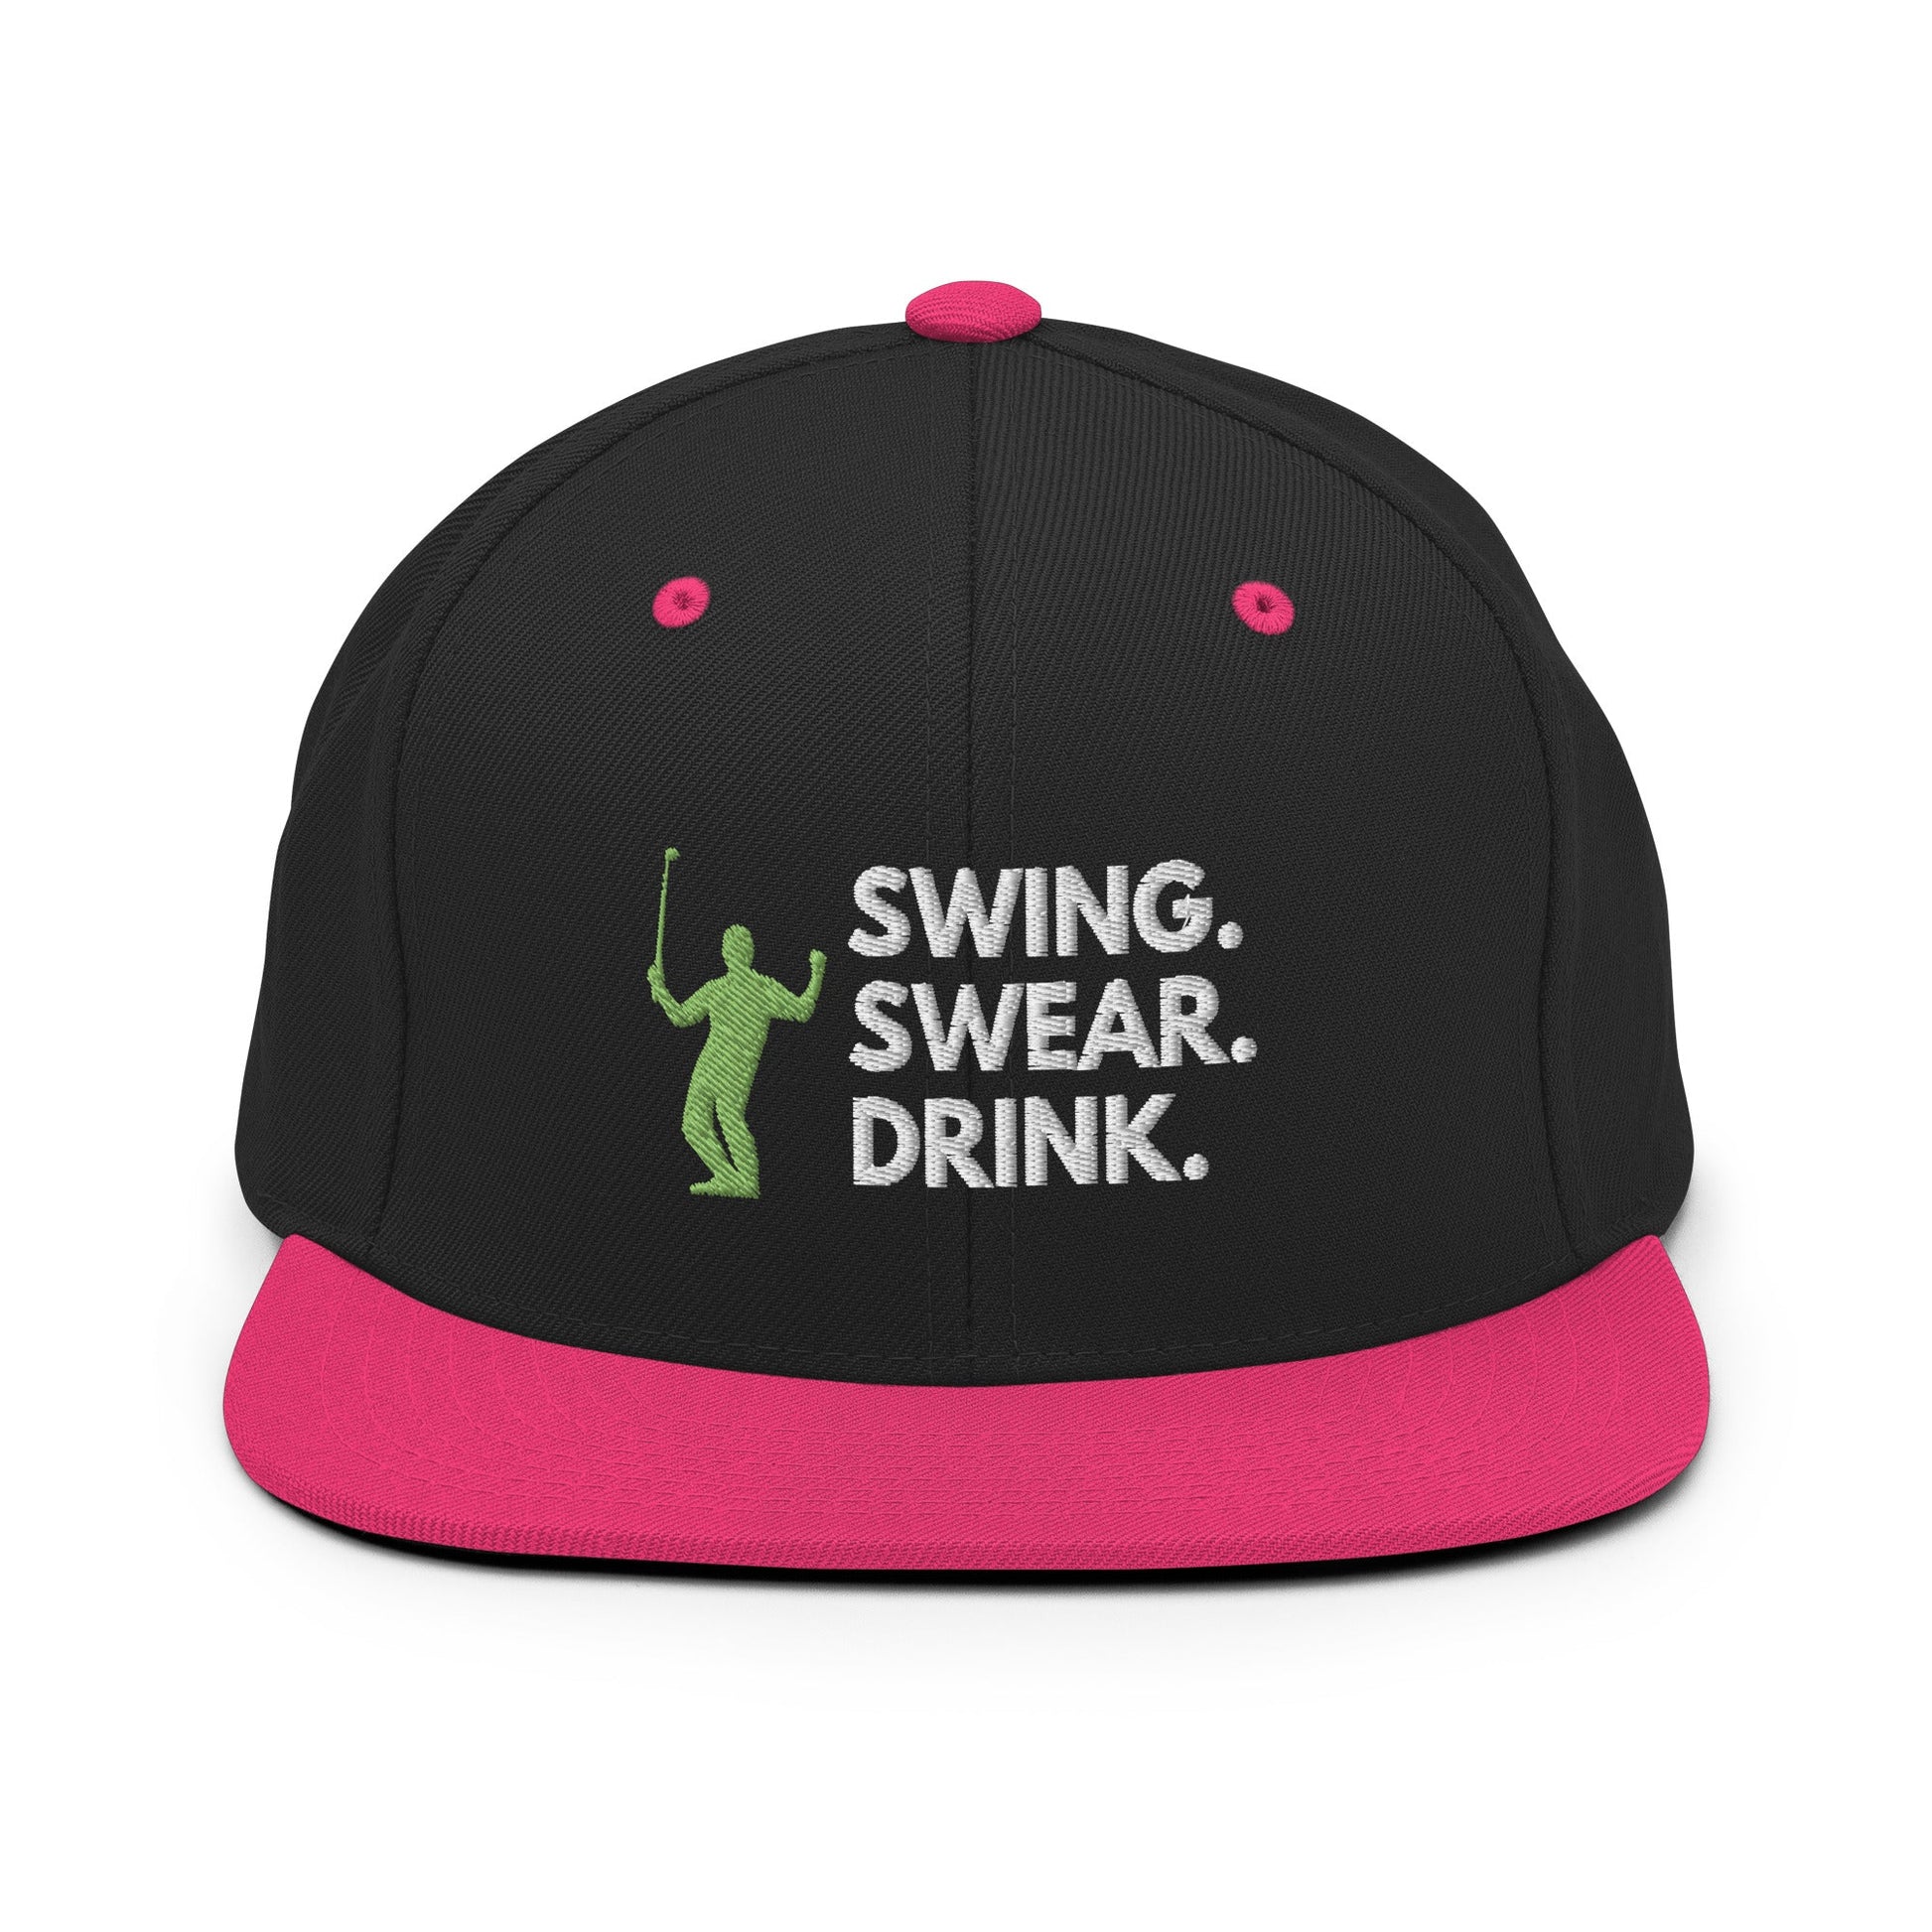 Funny Golfer Gifts  Snapback Hat Black/ Neon Pink Swing. Swear. Drink Snapback Hat